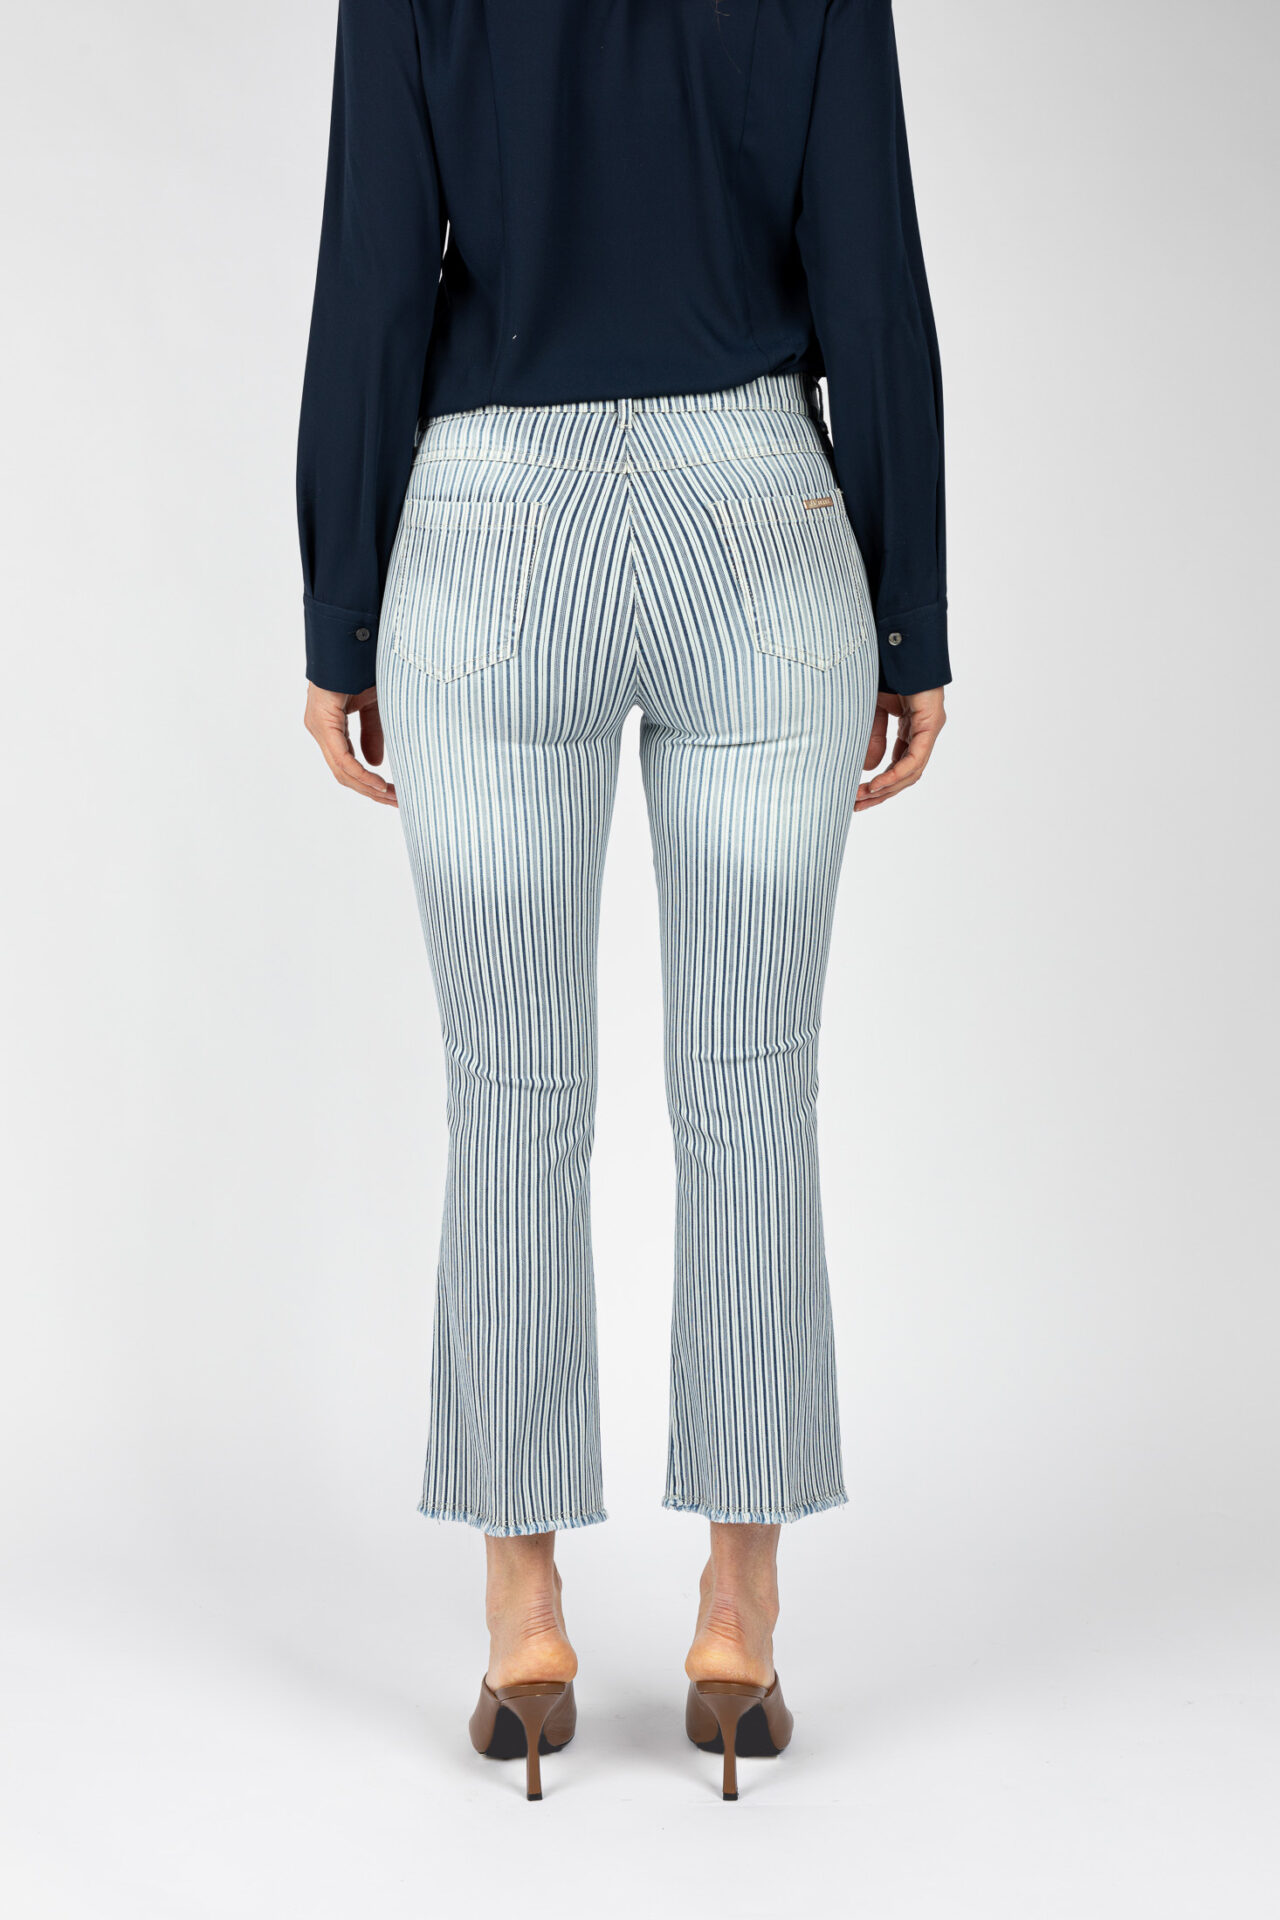 Pantaloni linea Jeans fondo a trombetta tessuto disegno riga colore blu P19946LM - 4